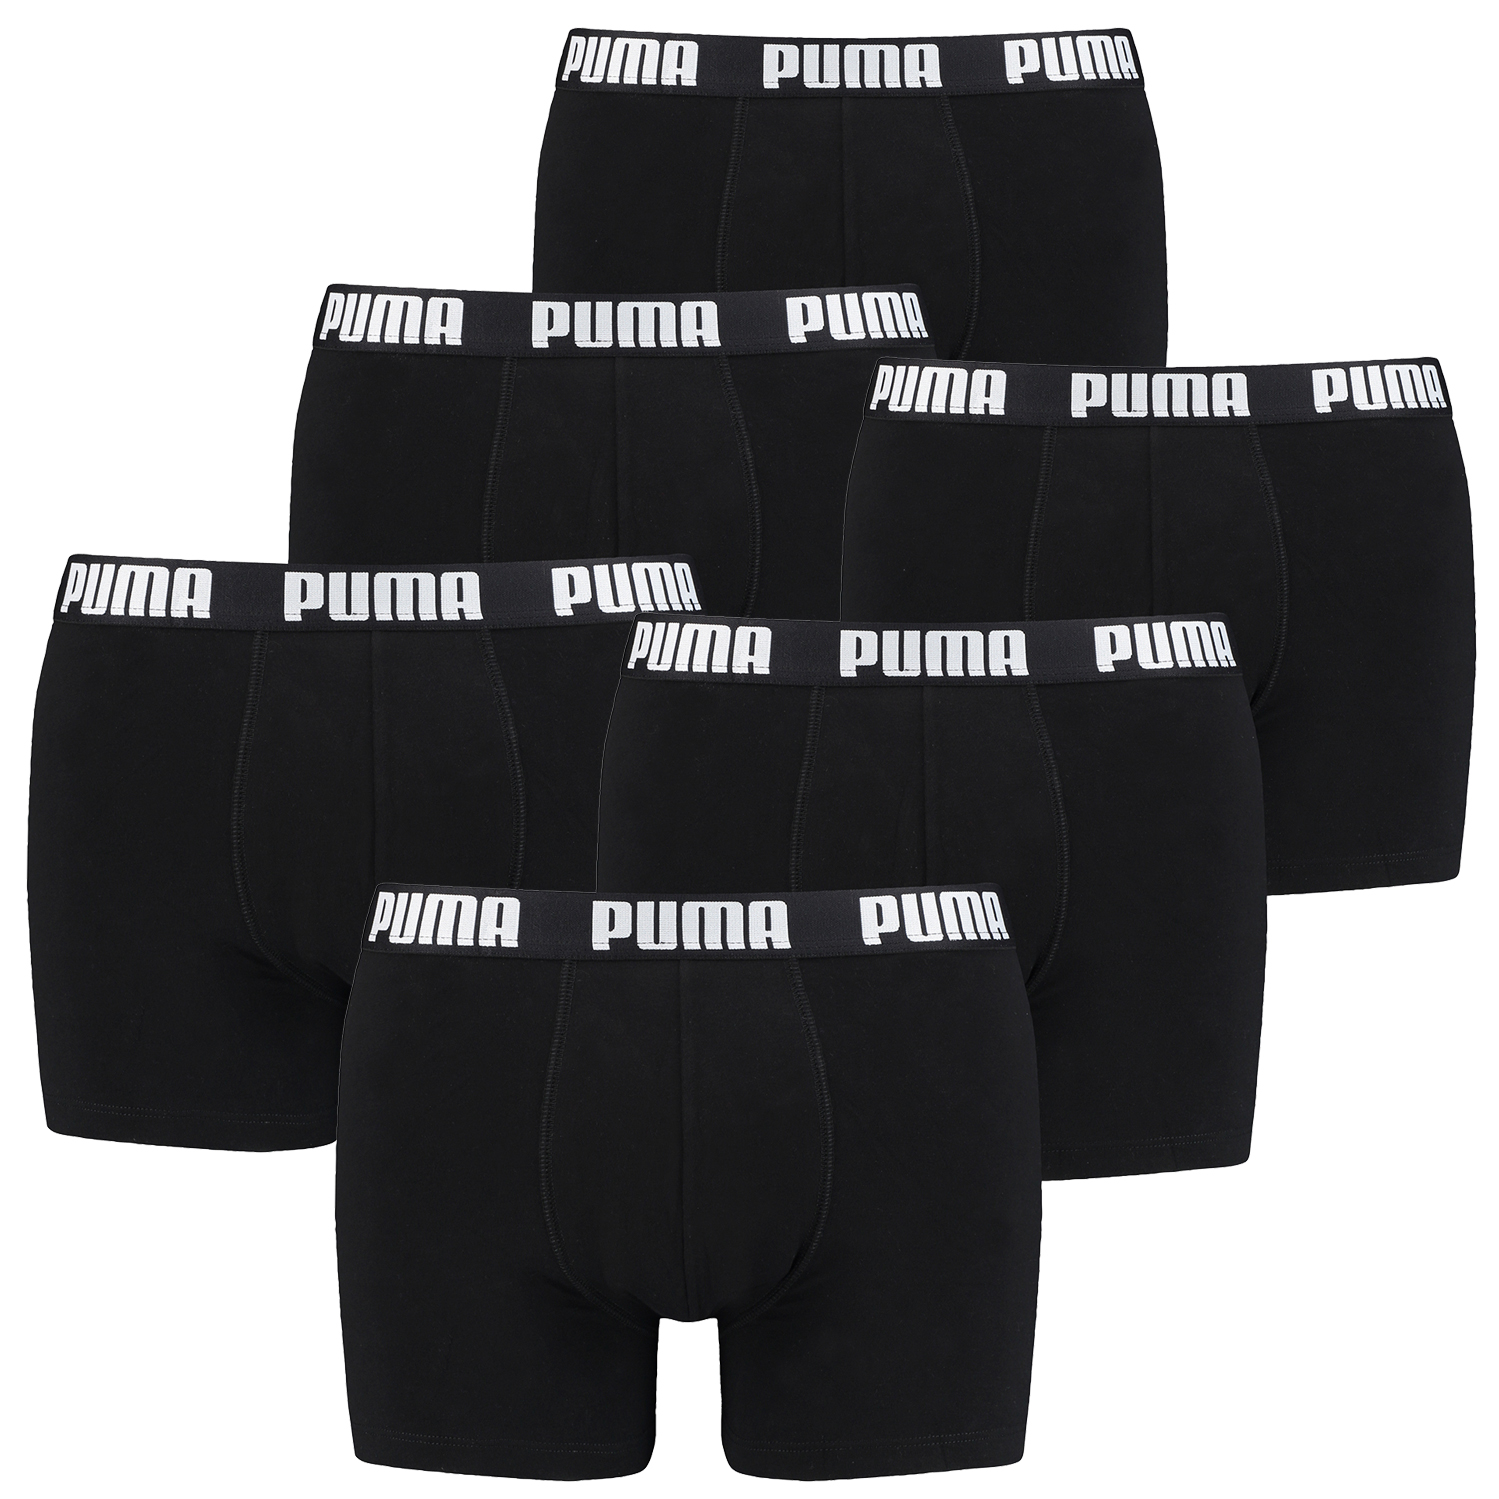 Puma Boxer Briefs Boxershorts Men Herren Everyday Unterhose Pant Unterwäsche 6 er Pack 